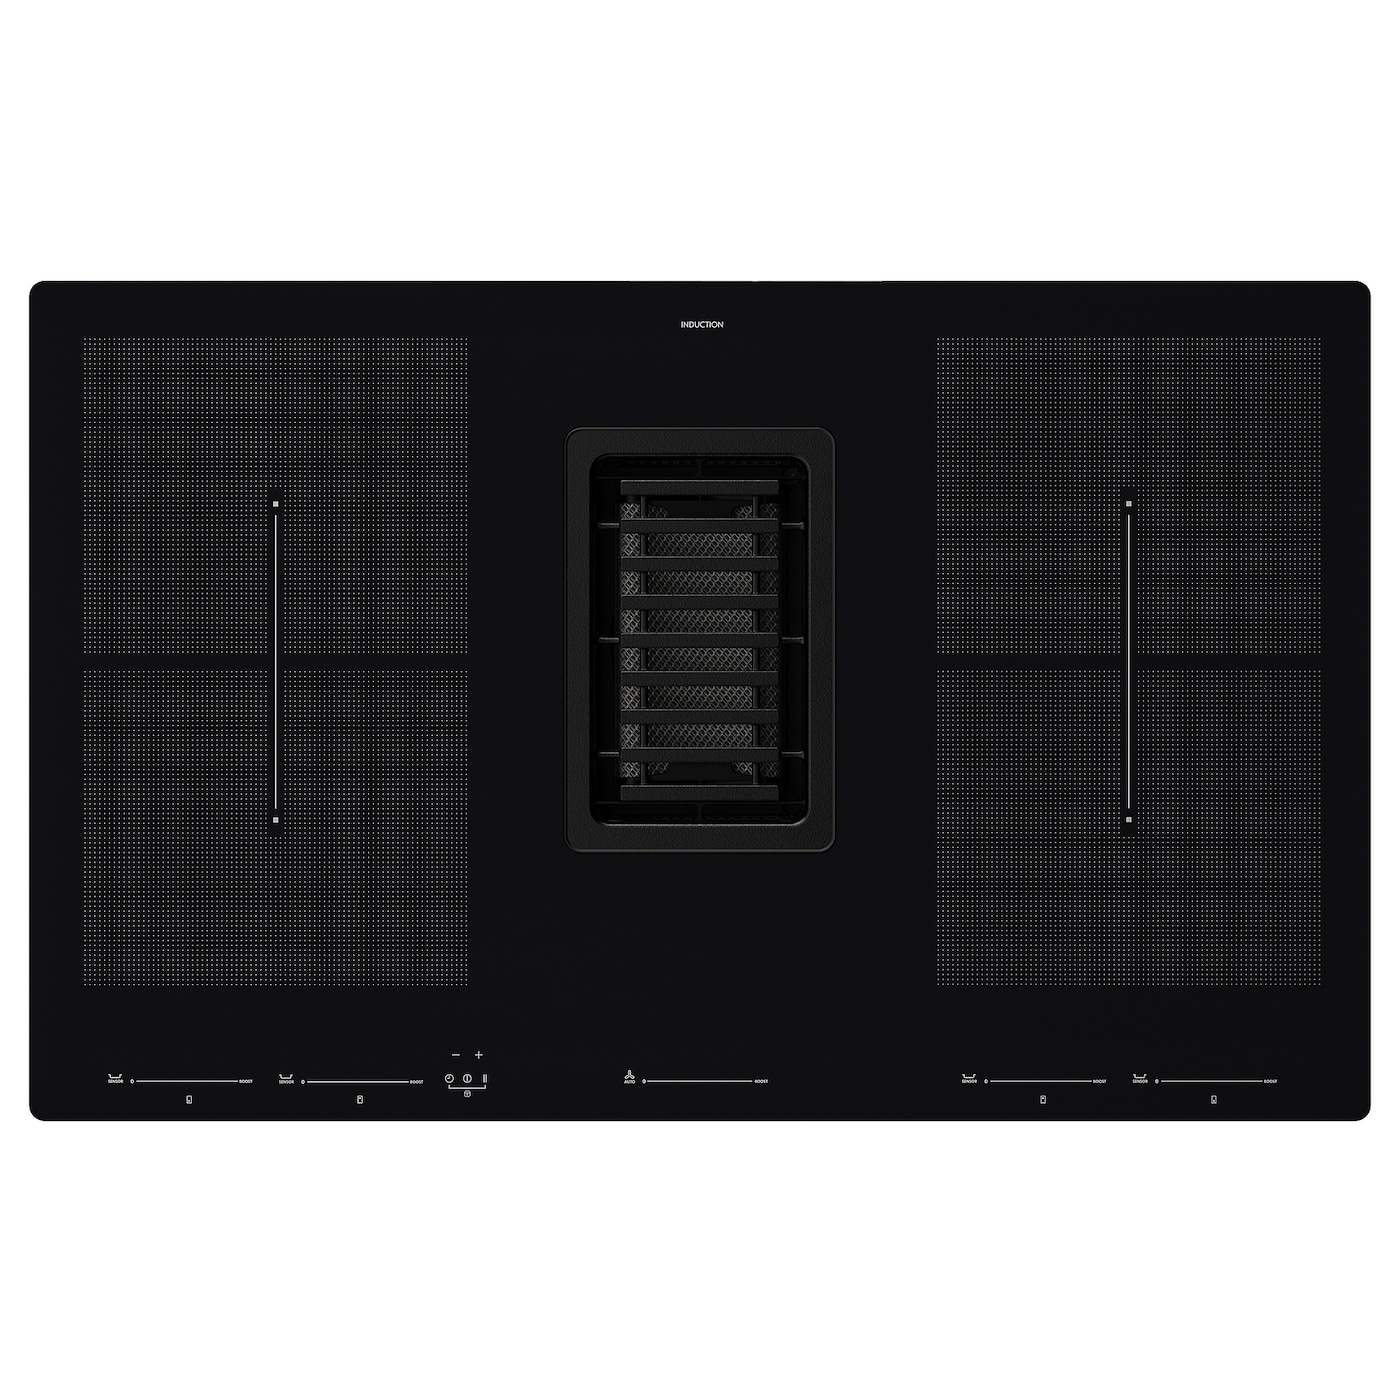 Индукционная варочная панель - FÖRDELAKTIG / FОRDELAKTIG IKEA/ ФОРДЕЛАКТИГ ИКЕА,  83 см, черный